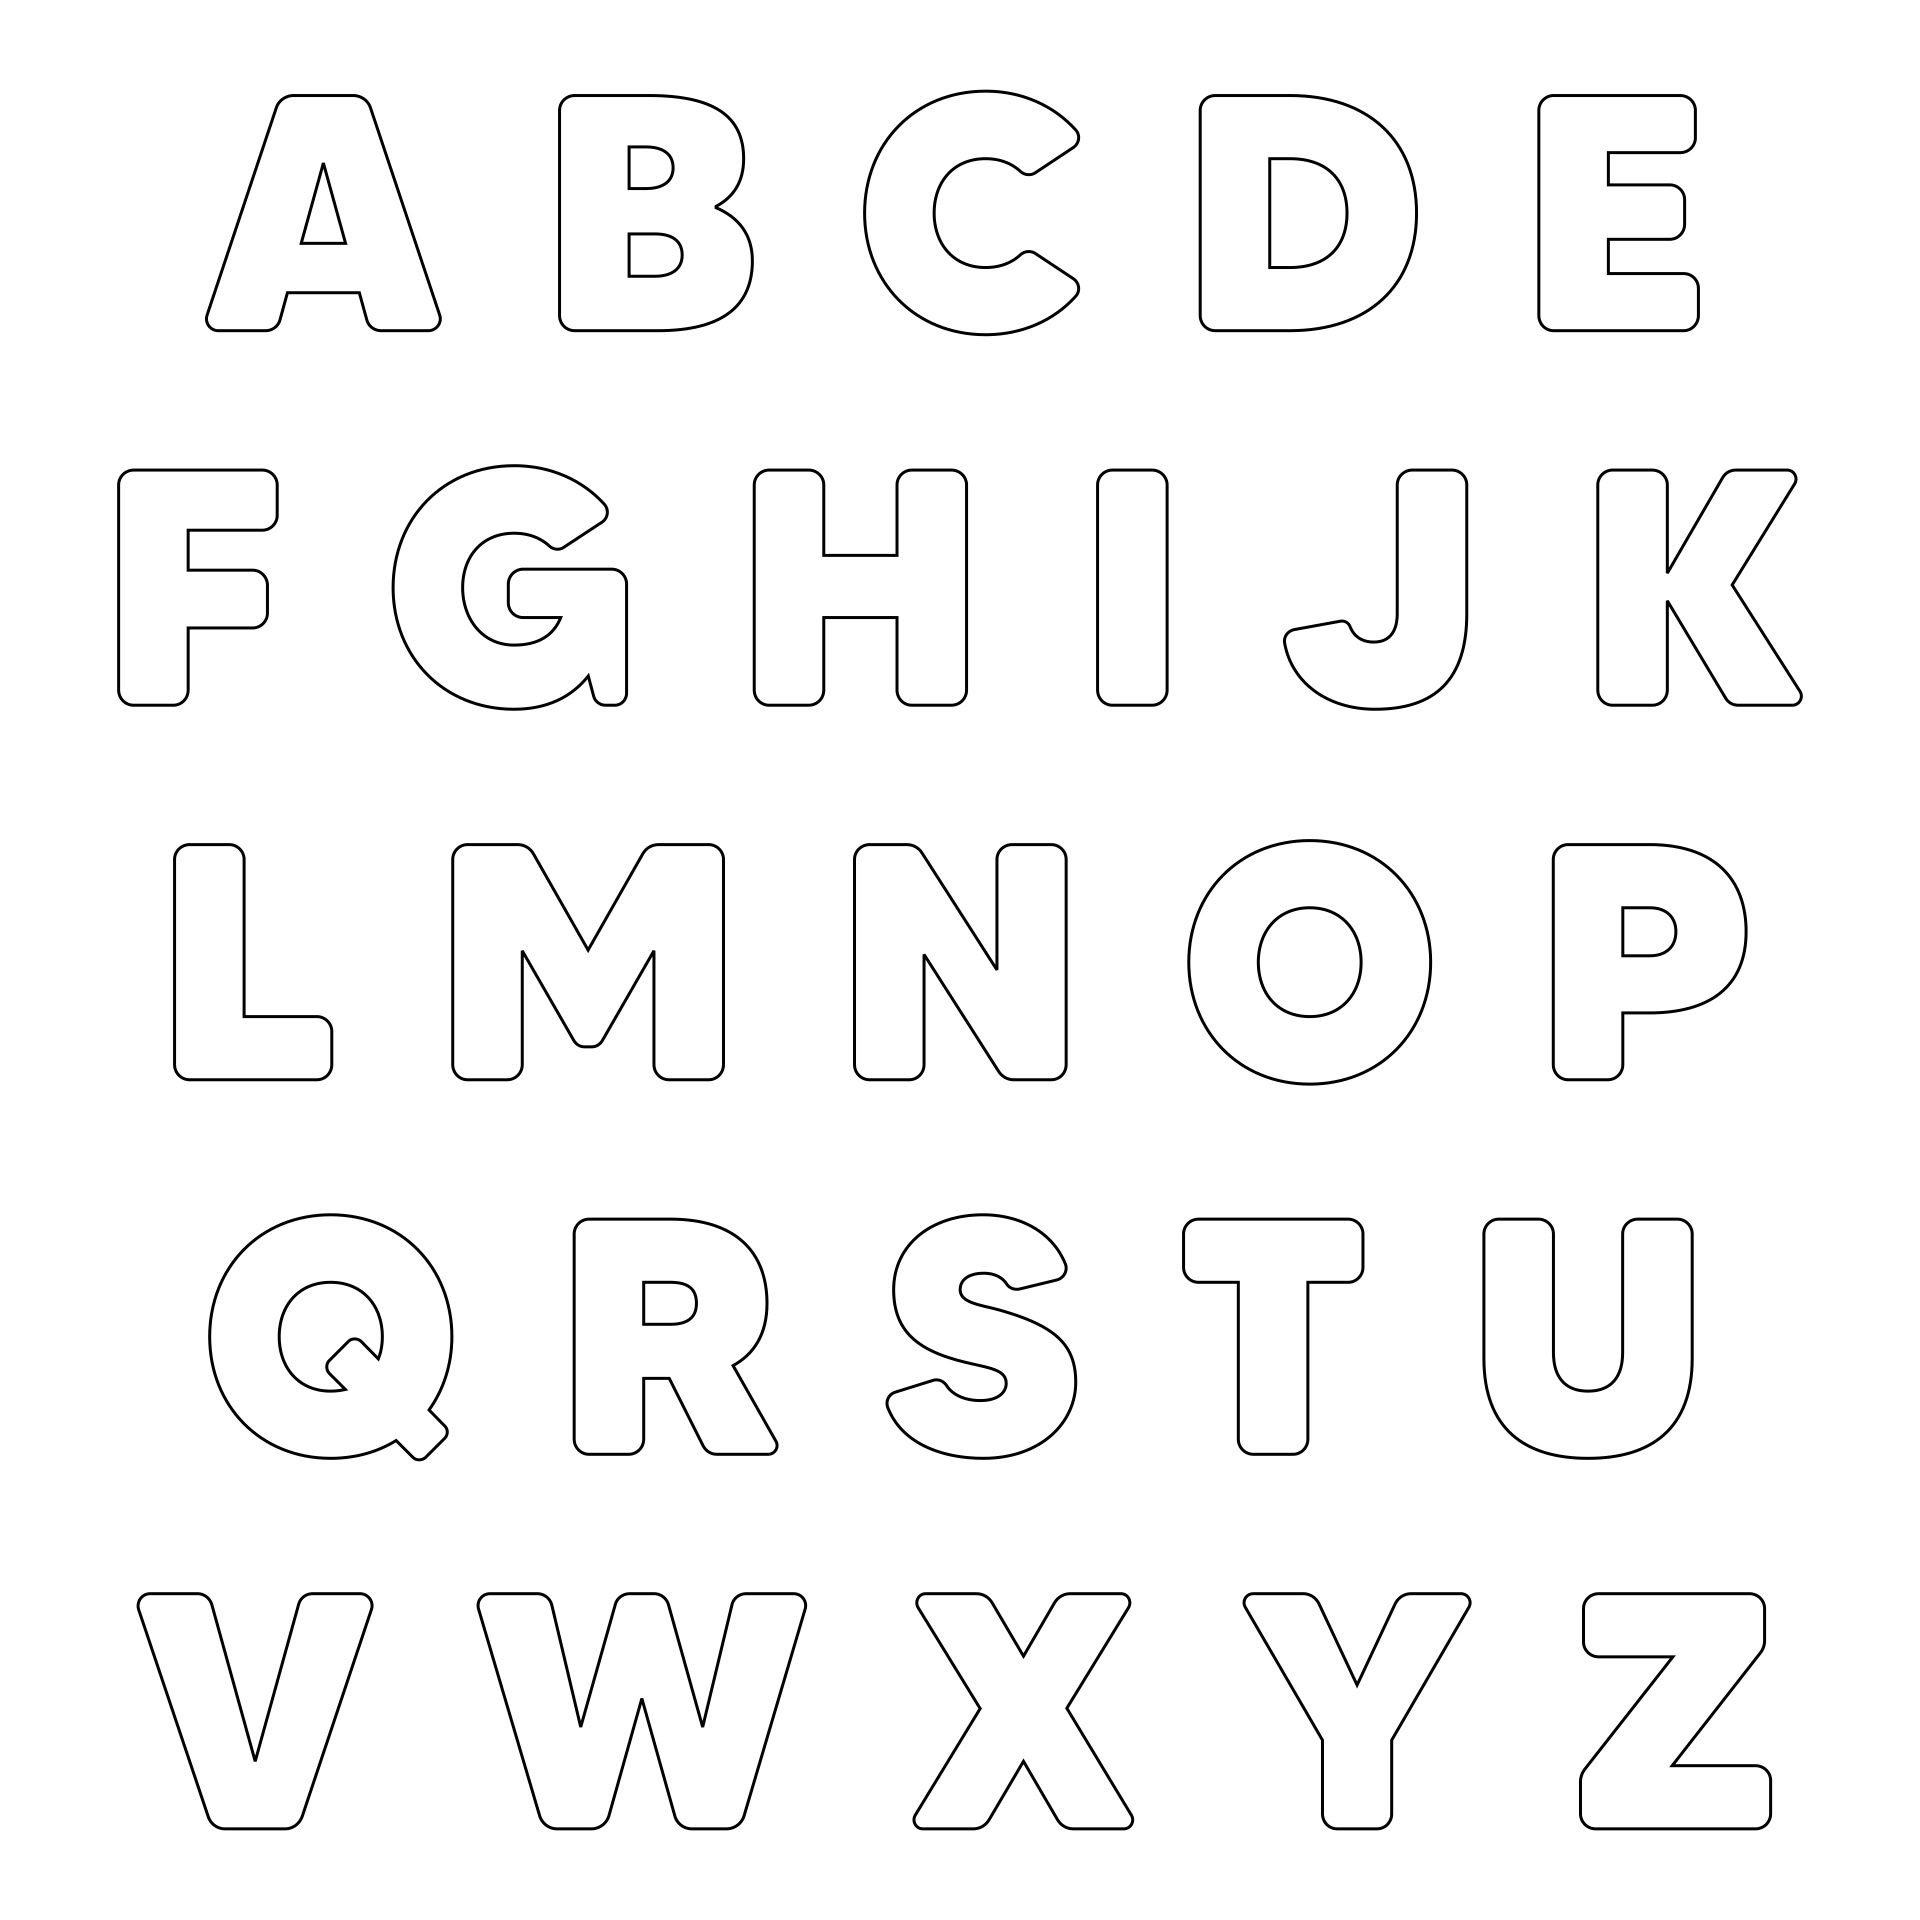 Printable 3d Alphabet Letters Template